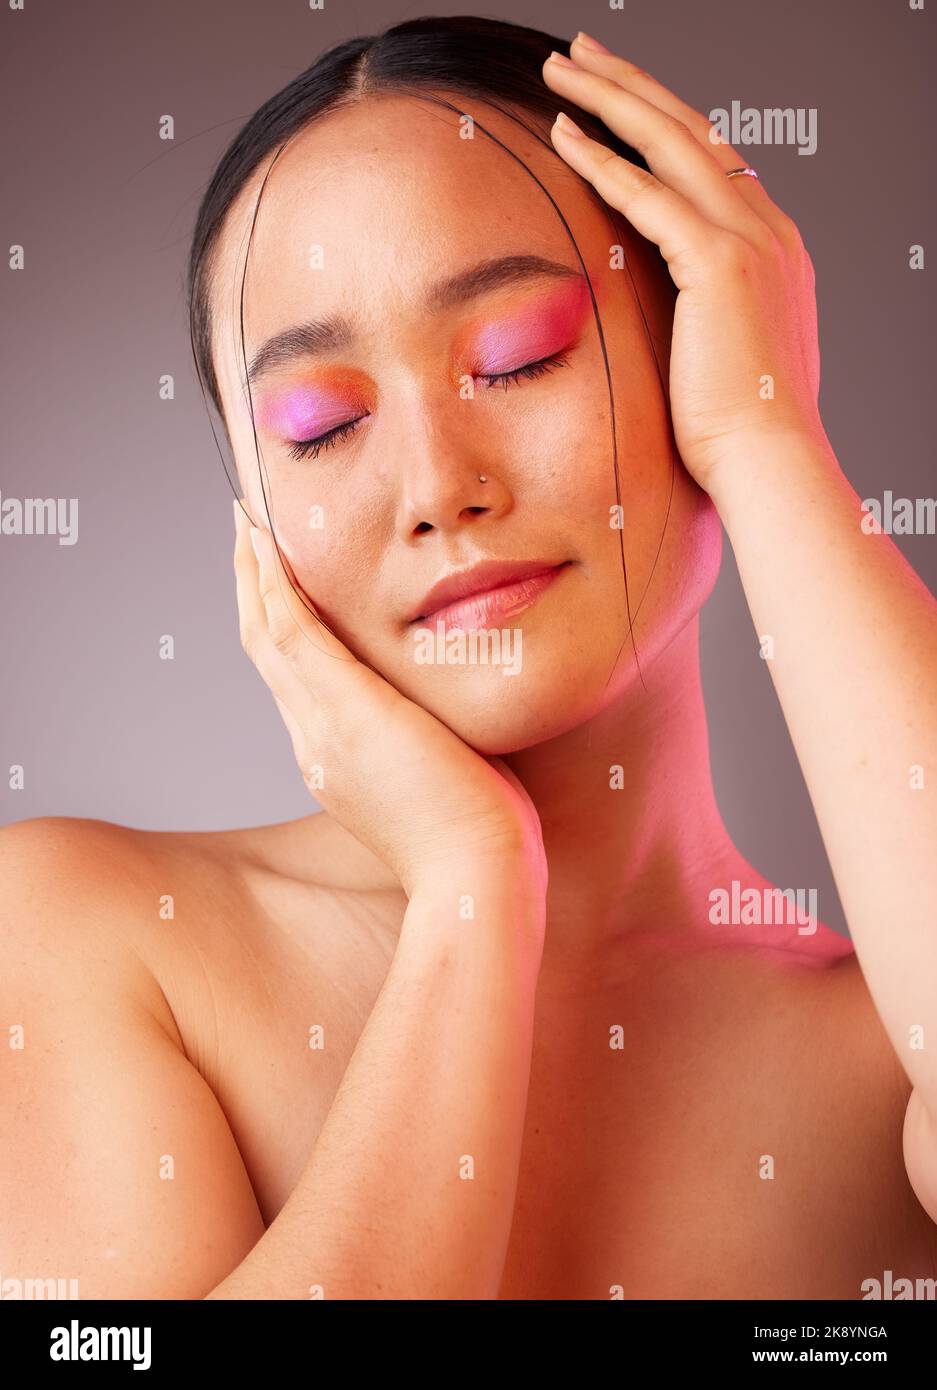 Eyeshadow, asiatica e donna di bellezza con mani sul viso posa con cosmetici rosa e arancione. Modello di trucco alla moda funky, trendy e colorato per Gen Z Foto Stock